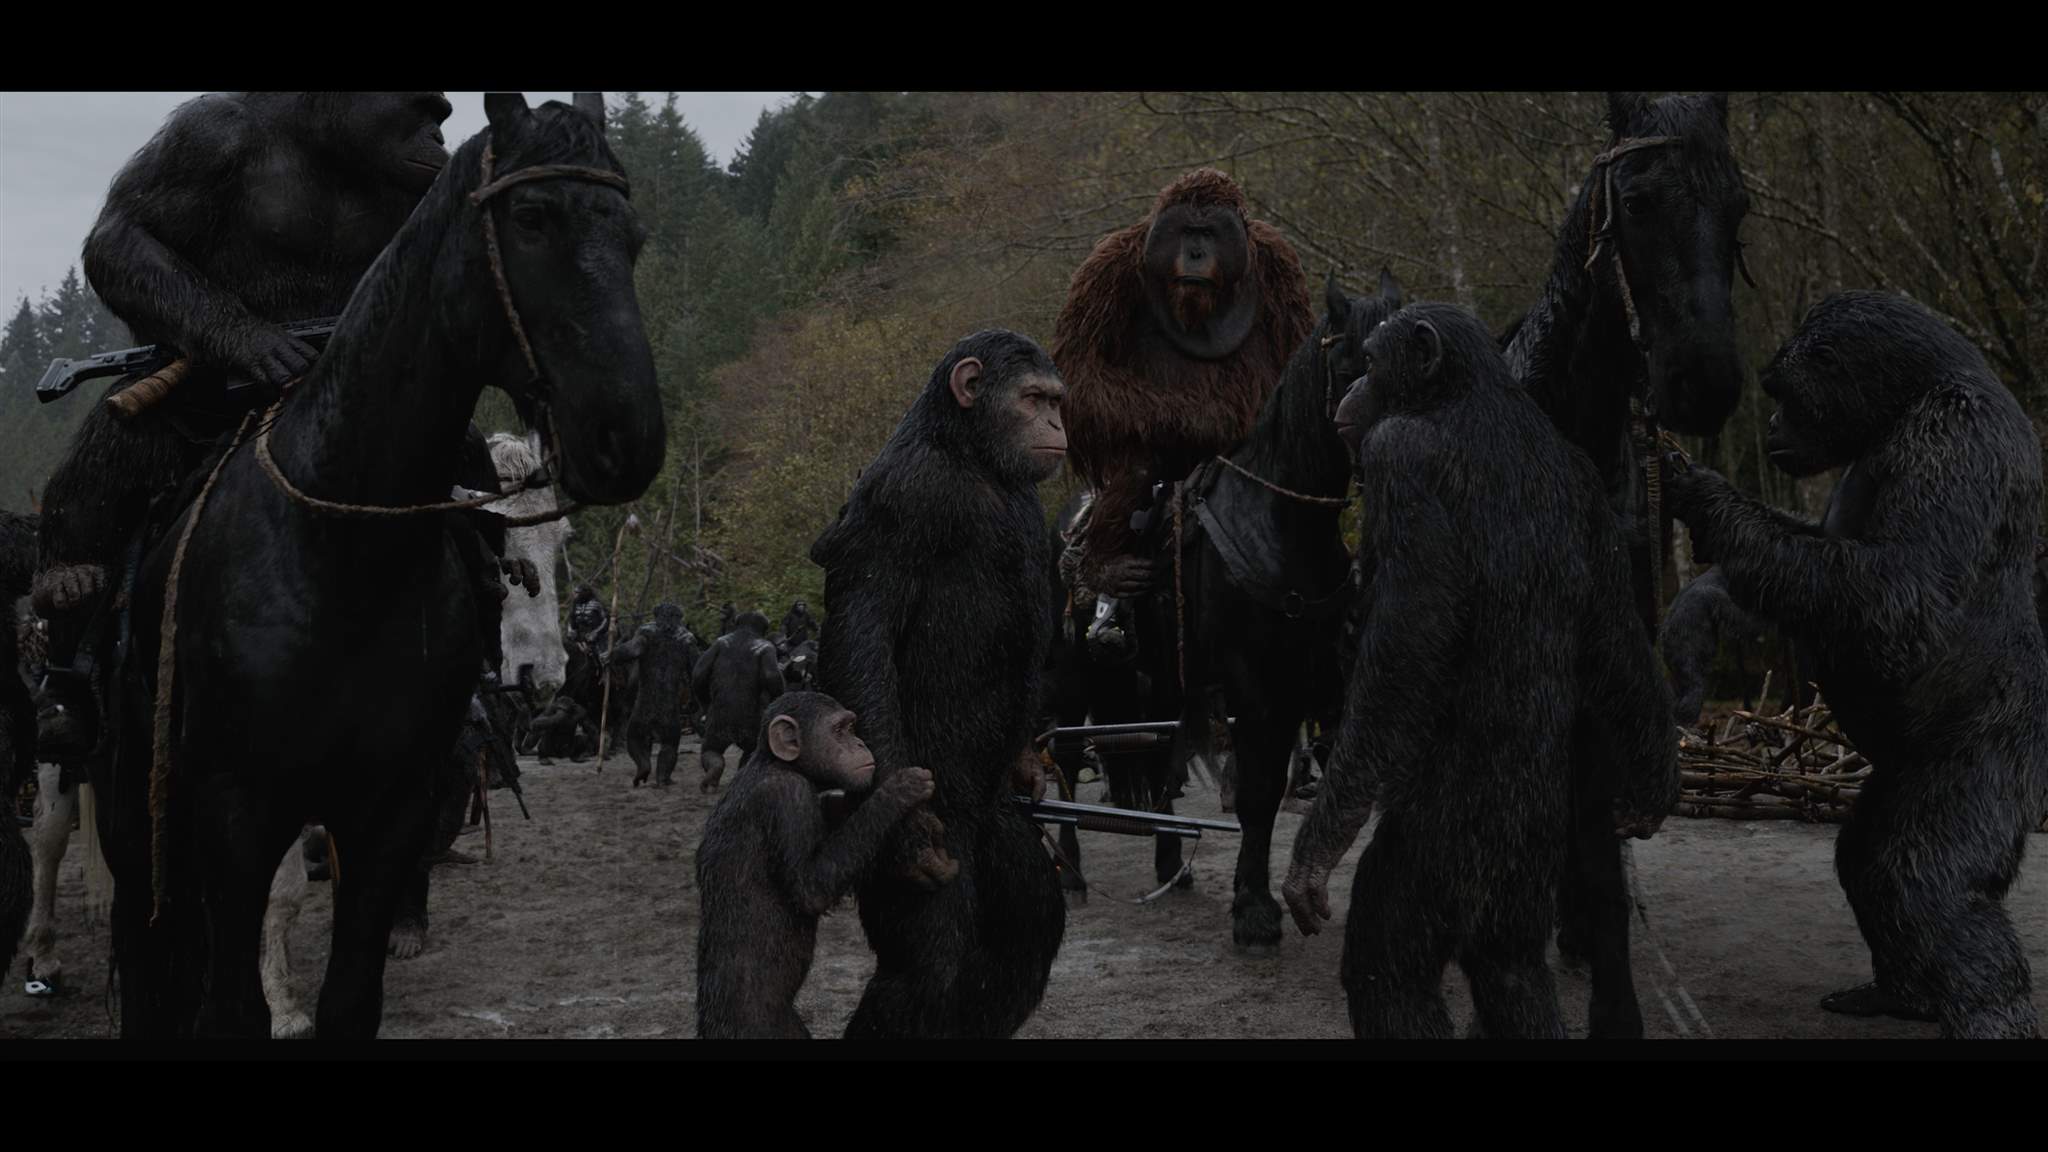 Планета обезьян революция 2014 субтитры обезьян. Планета обезьян вождь. Планета обезьян солдаты.